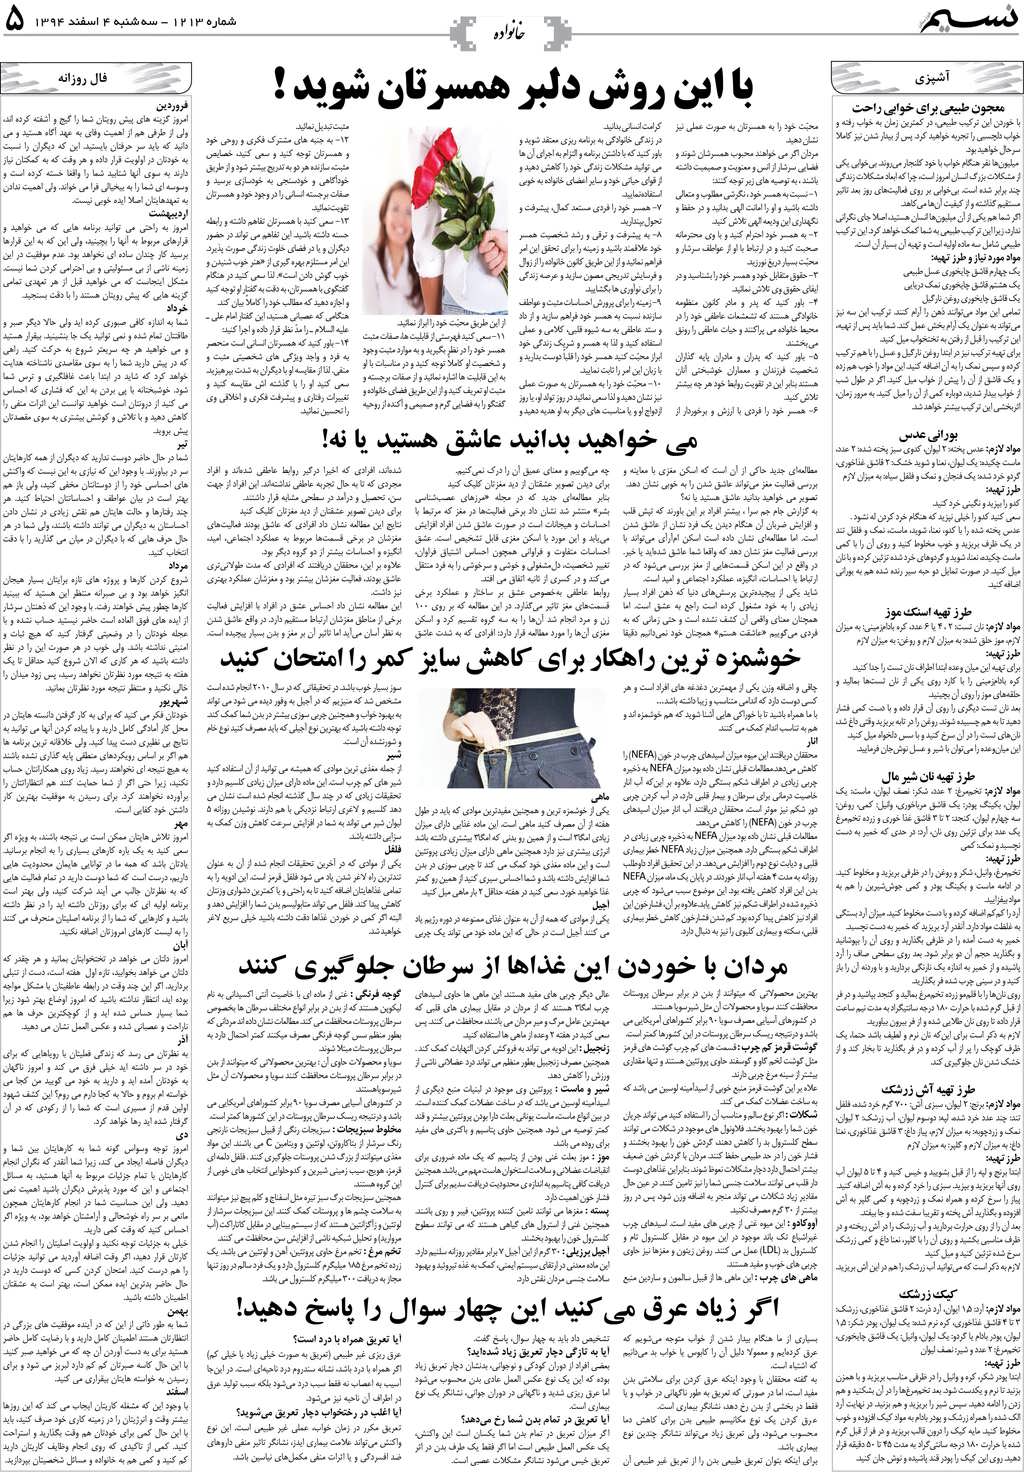 صفحه خانواده روزنامه نسیم شماره 1213